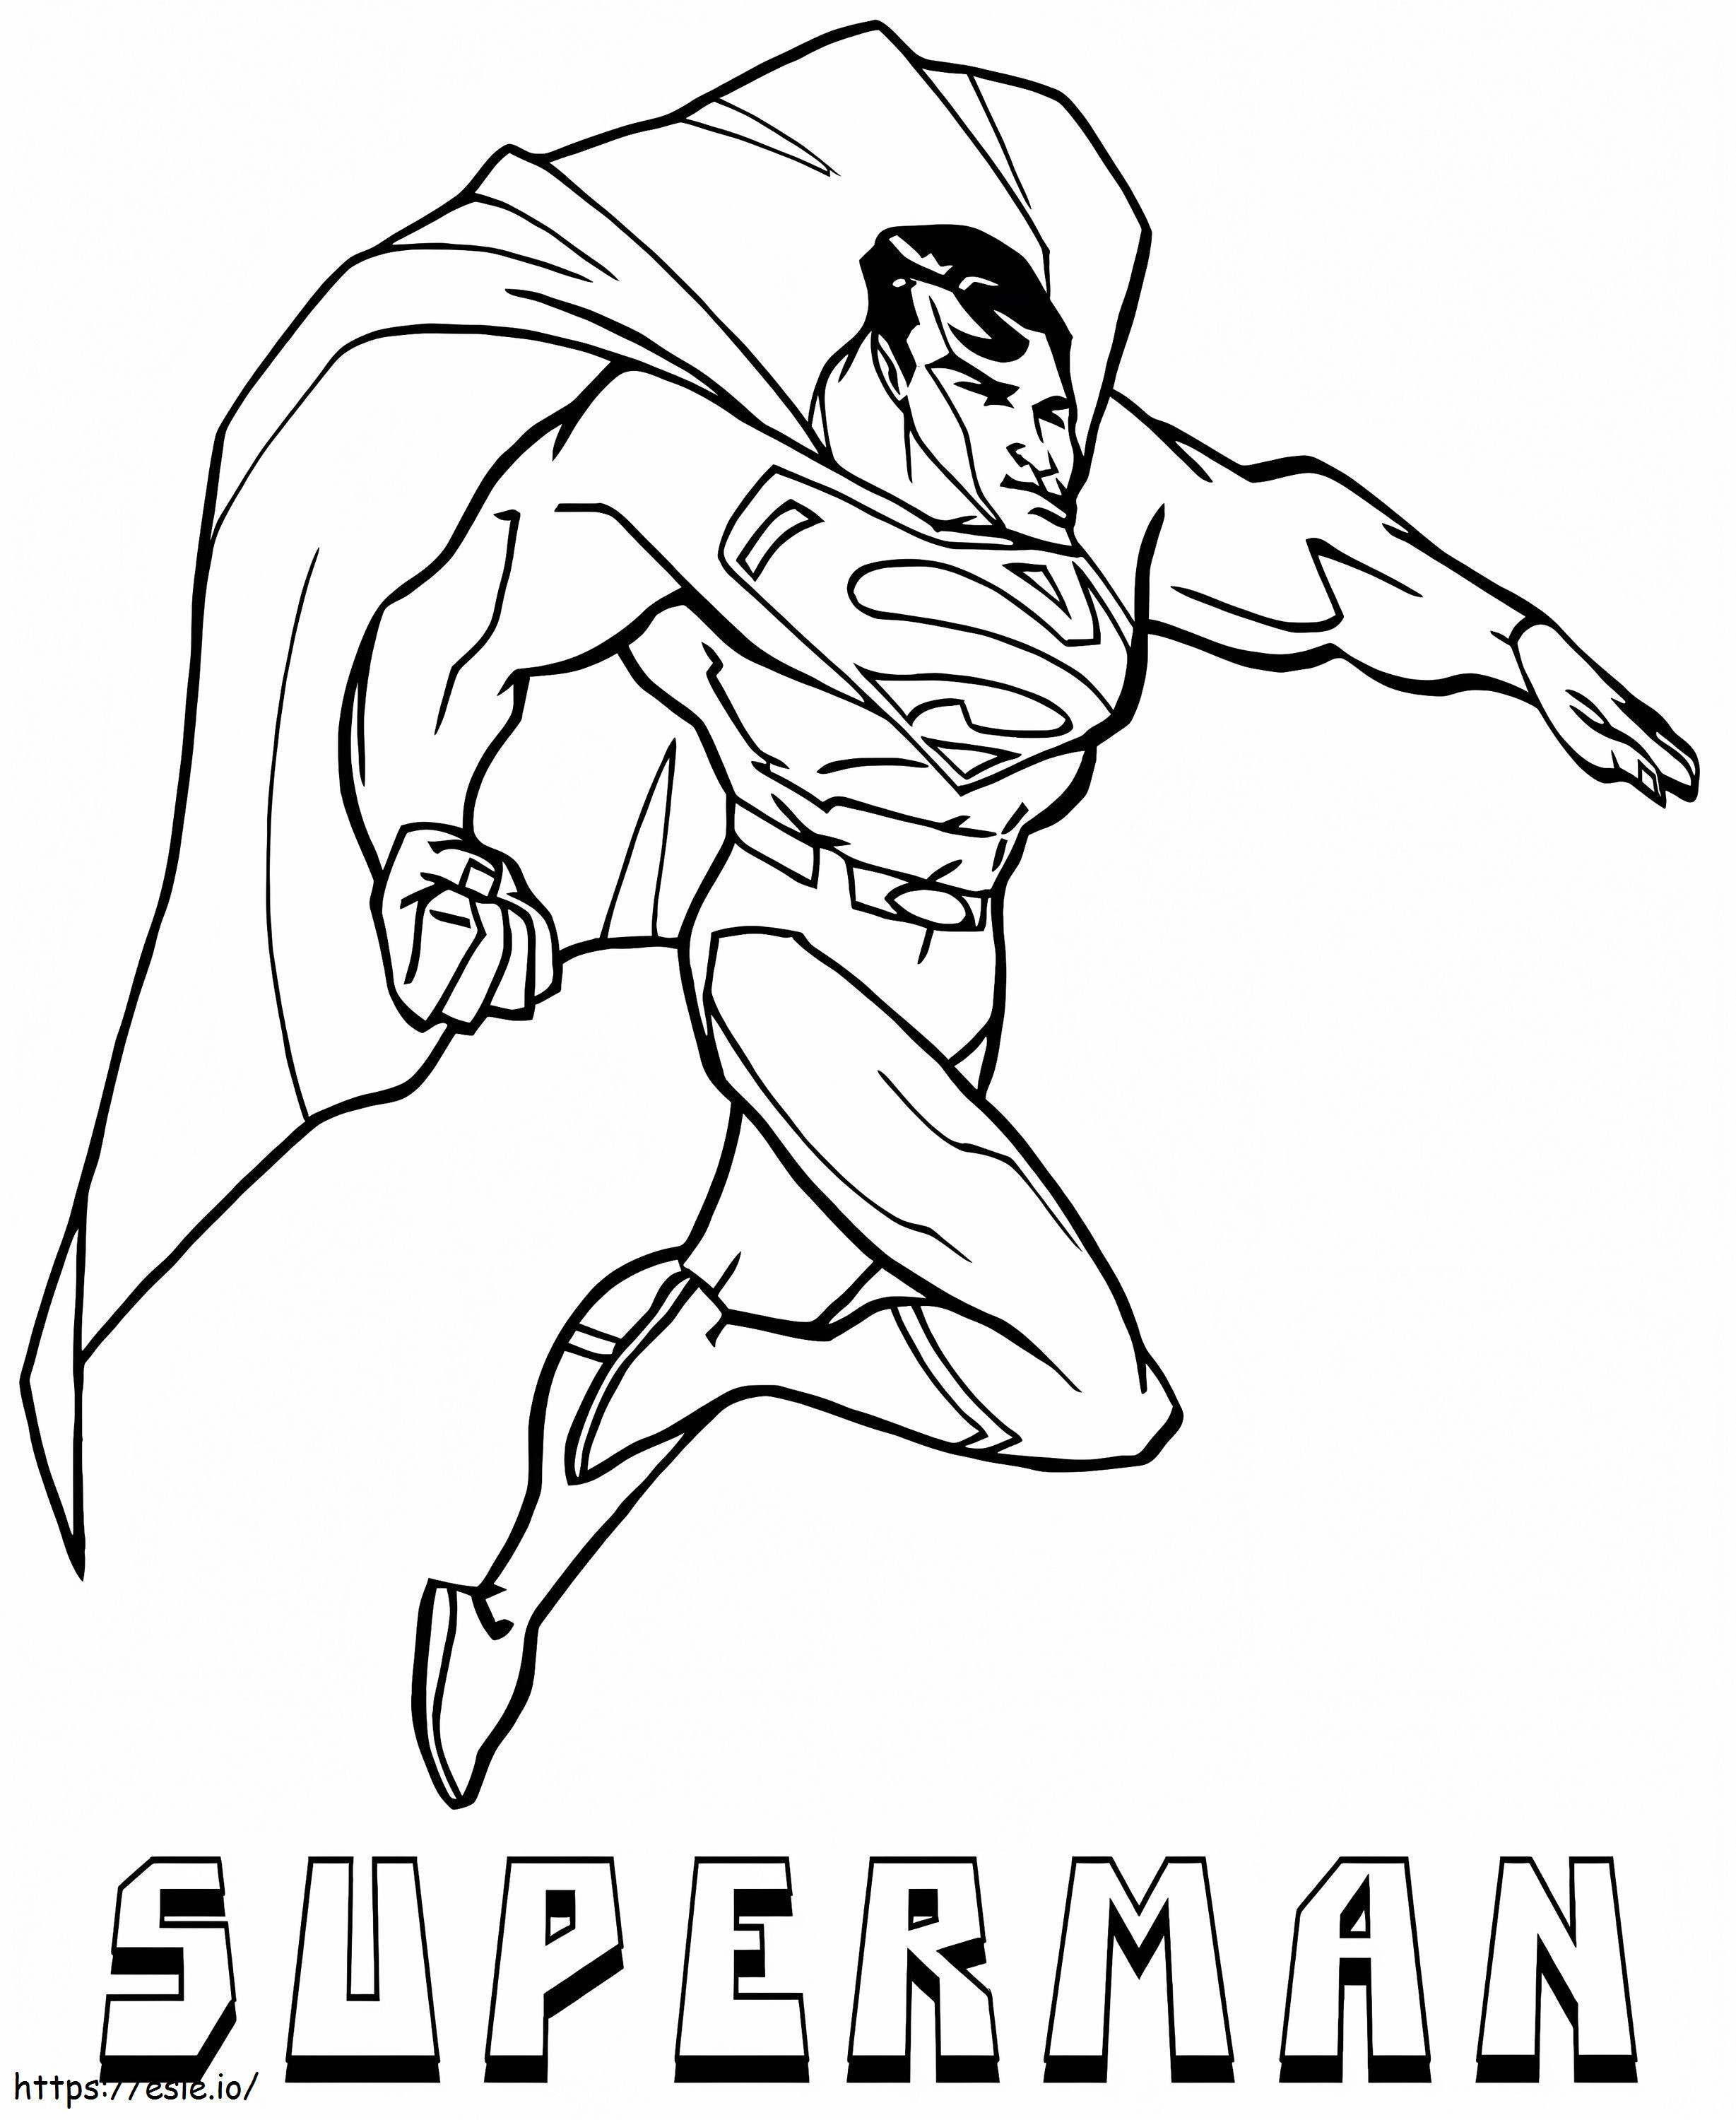 Superman genial para colorear